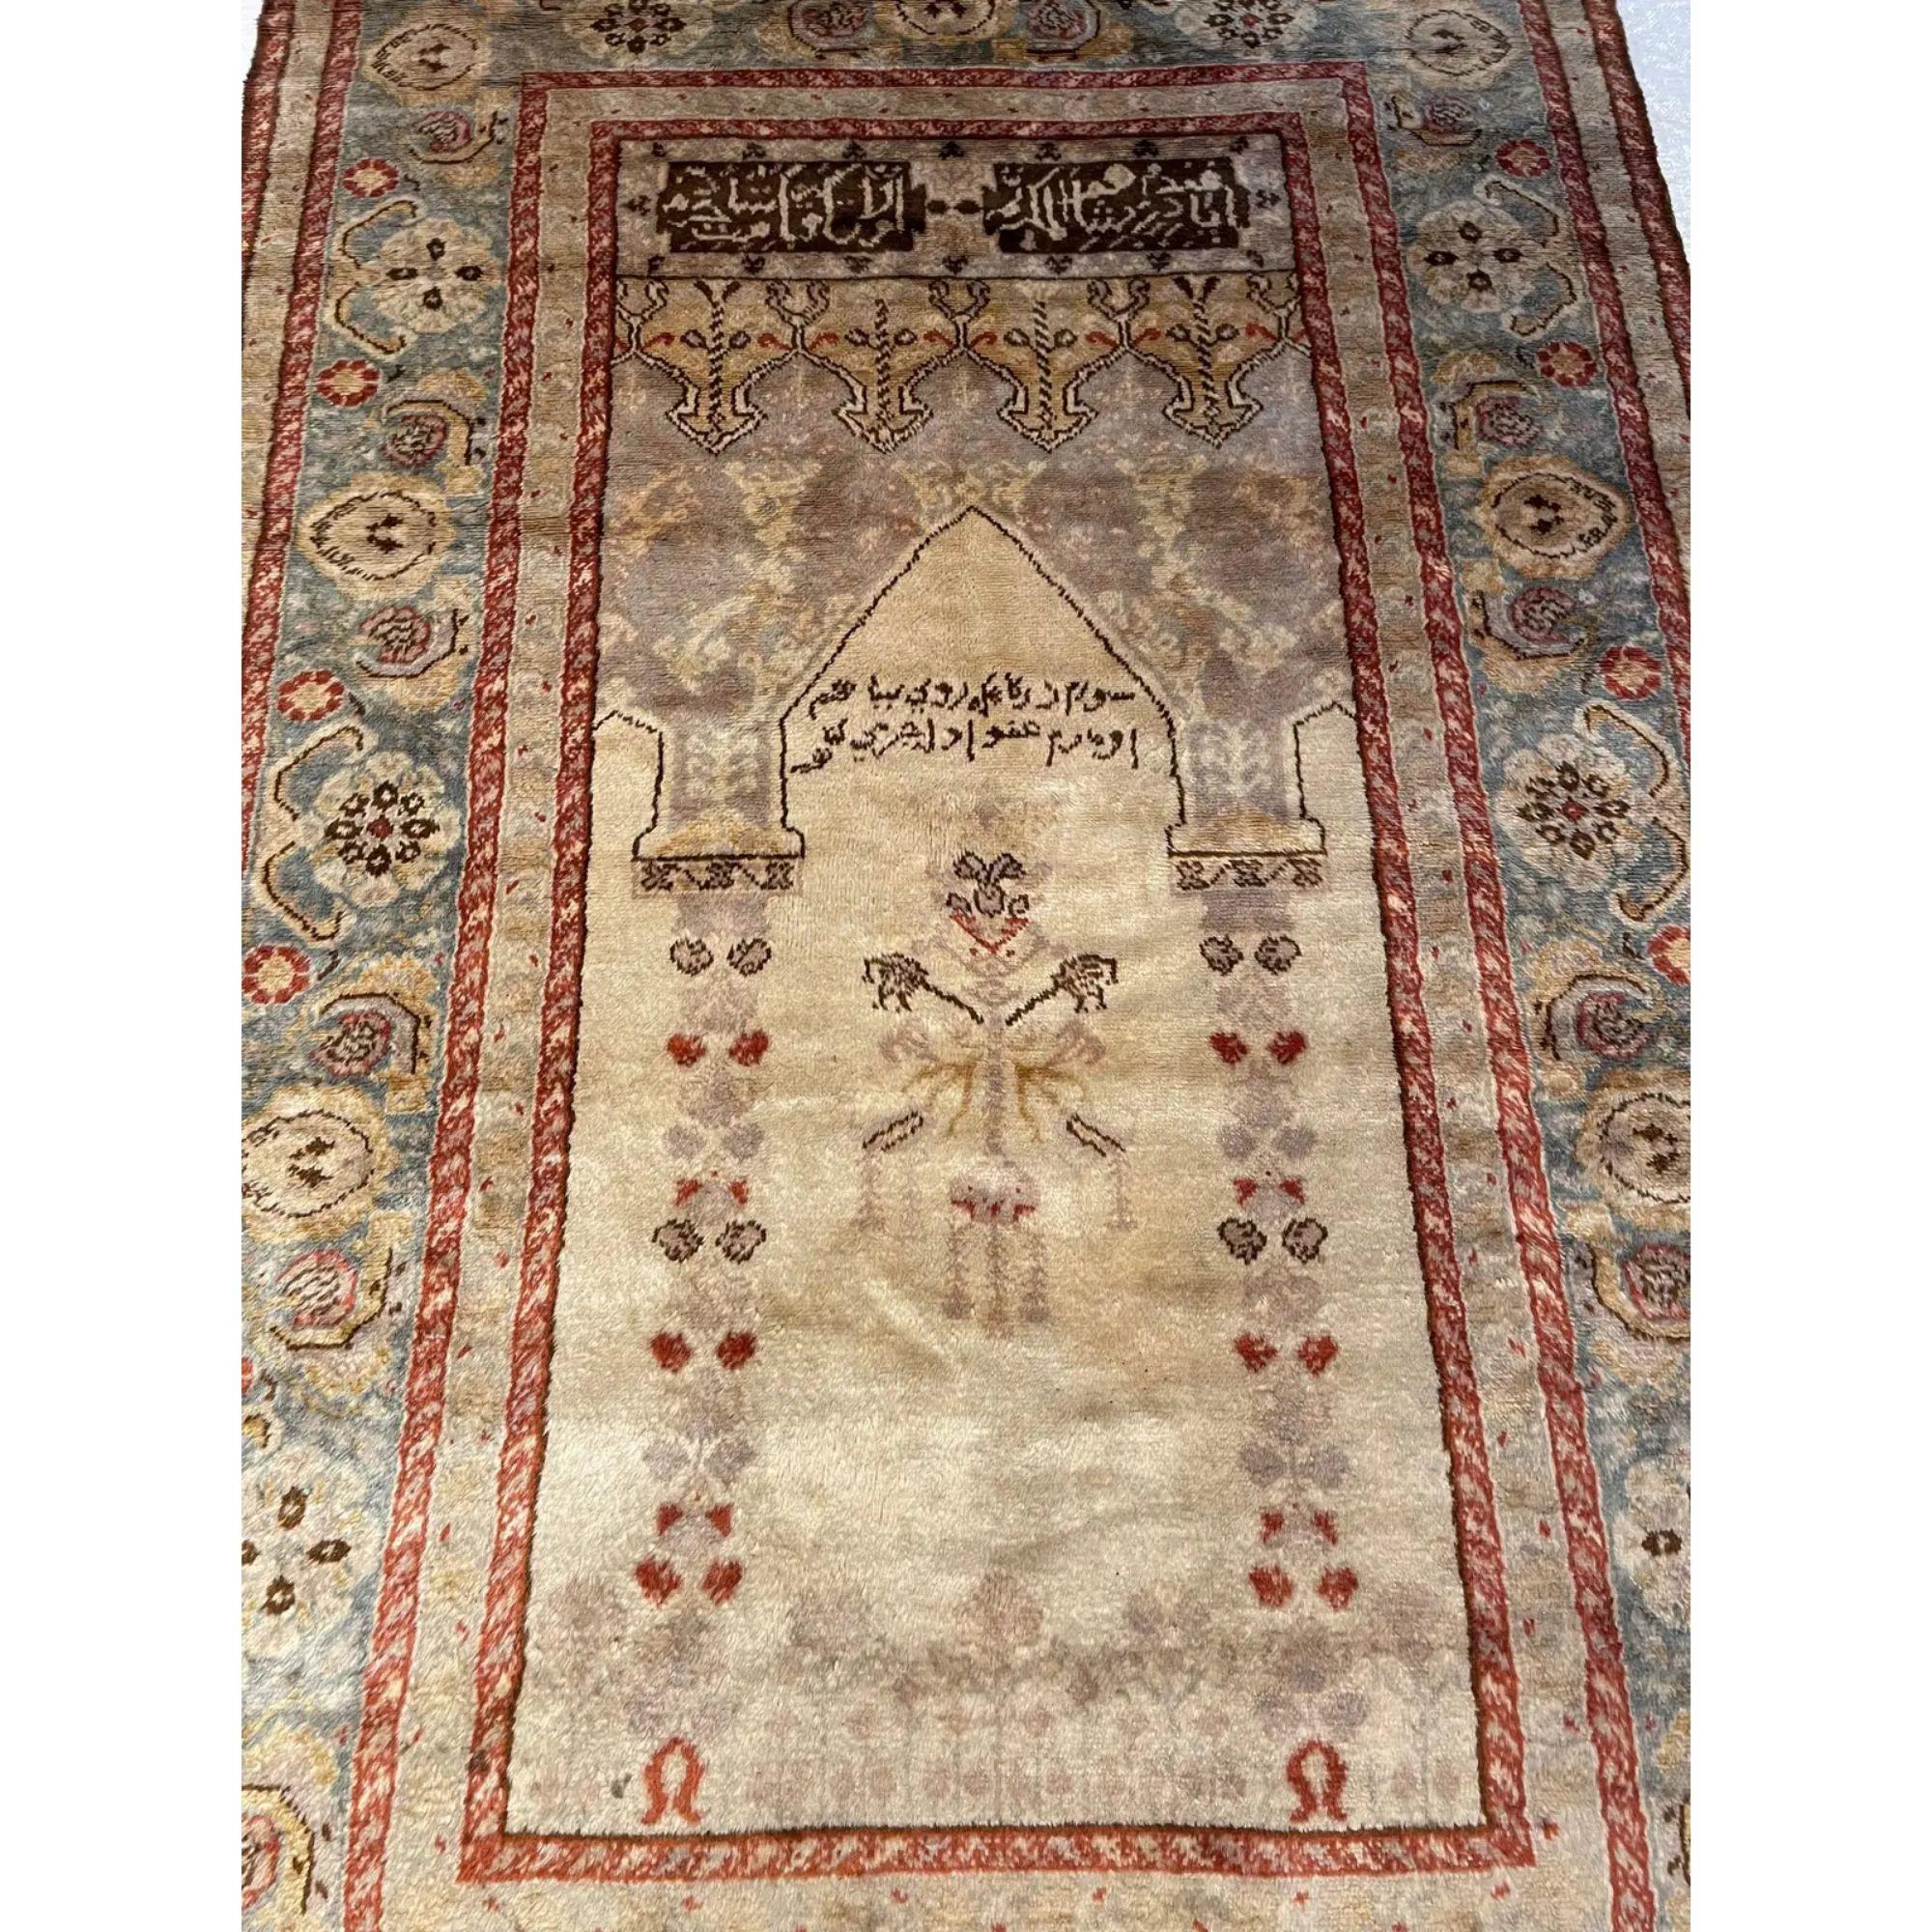 L'un des tapis turcs les plus inhabituels, composé à 100 % de la laine la plus douce qui ait jamais existé. Fabriquée avec des teintures végétales, elle porte la signature de l'artiste et date d'environ 1900. Pièce unique et de collection